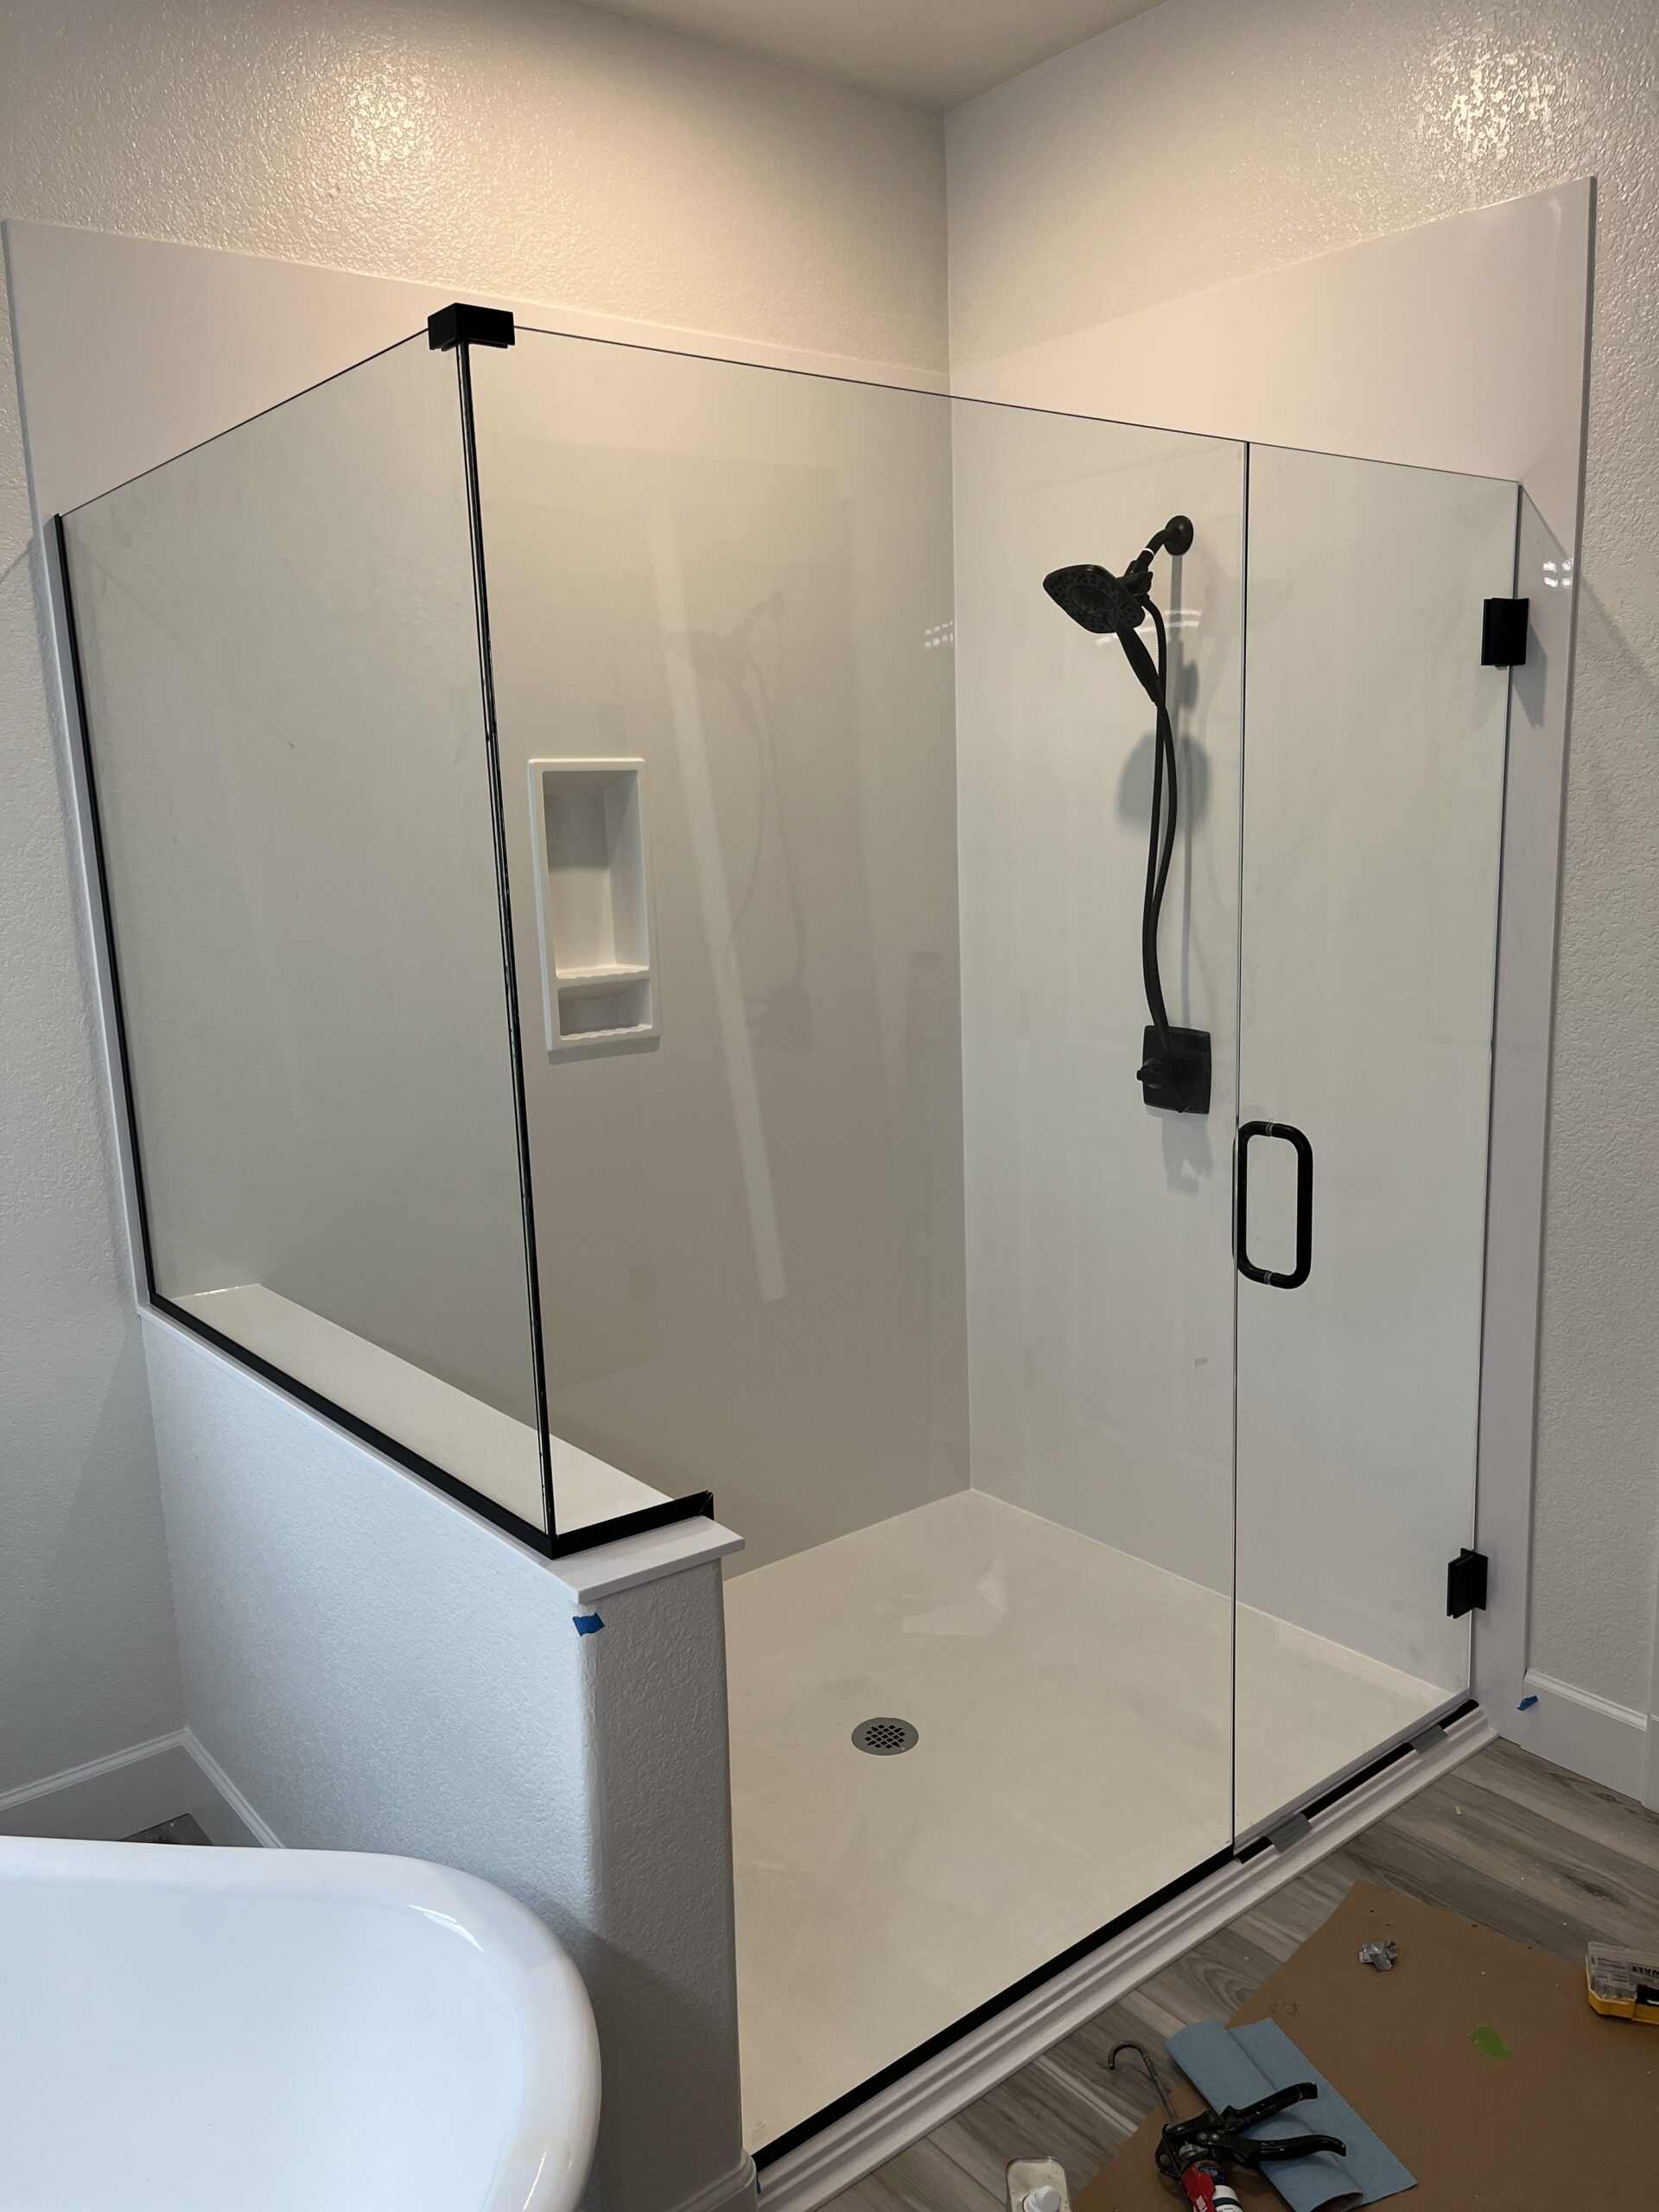 Hodgson Shower Bathroom Remodel After